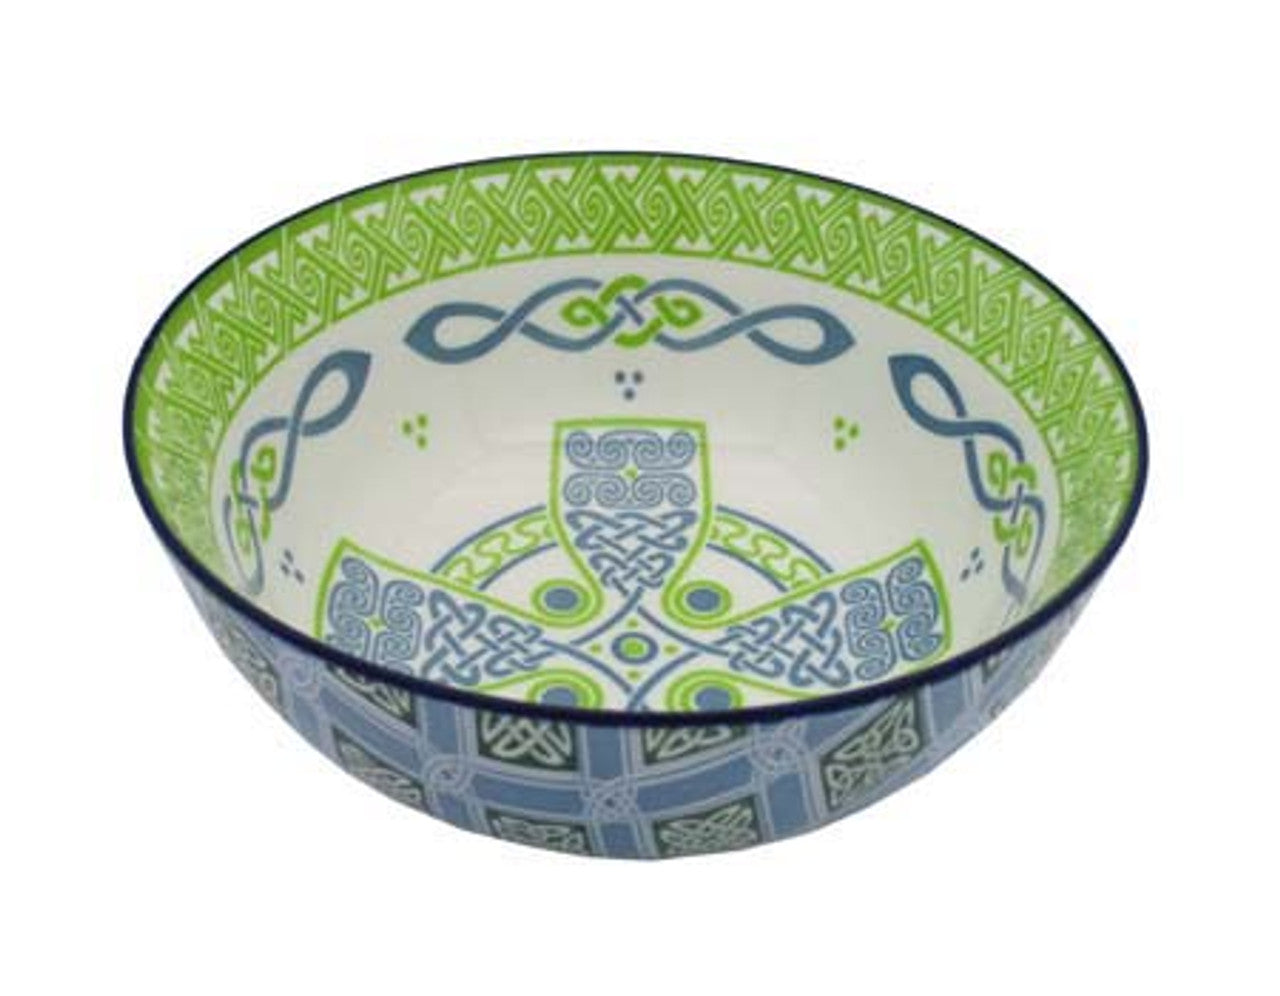 Celtic High Cross Ceramic Bowl